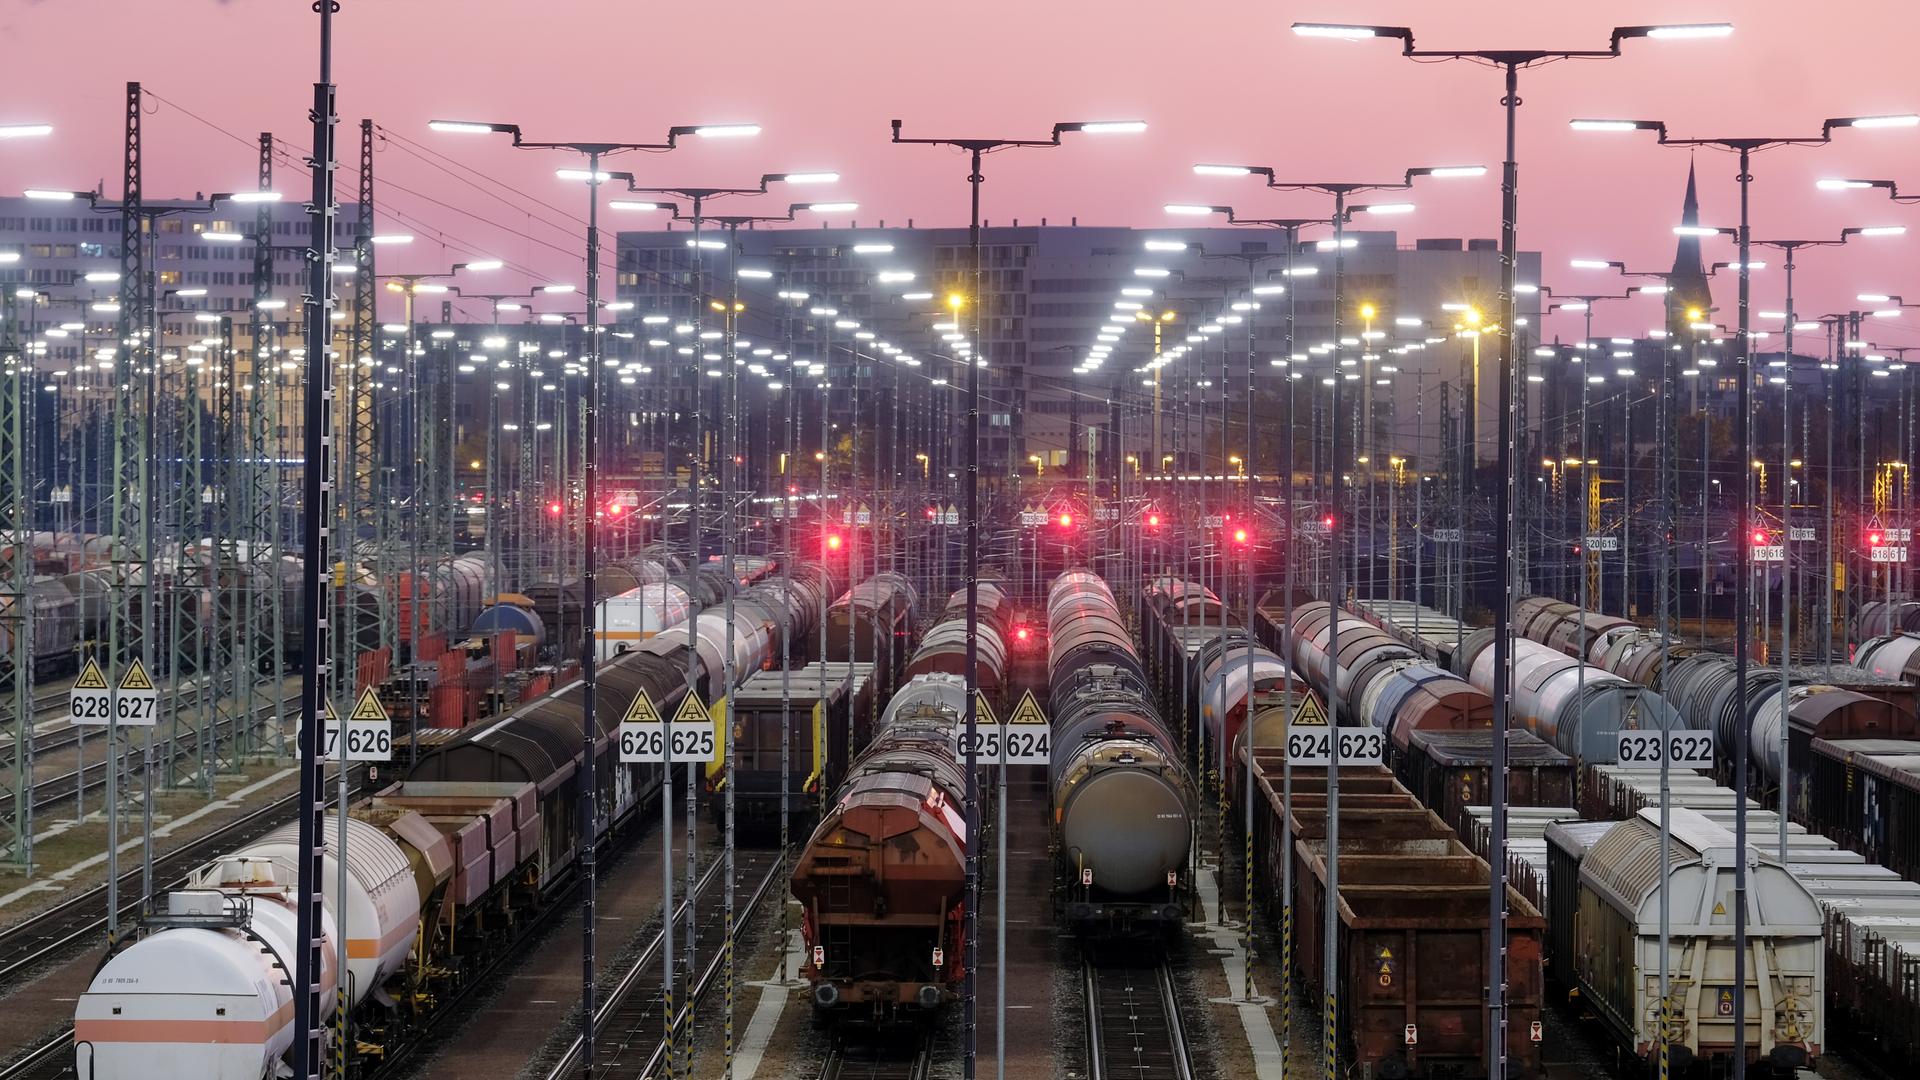 Güterzüge stehen am Rangierbahnhof.